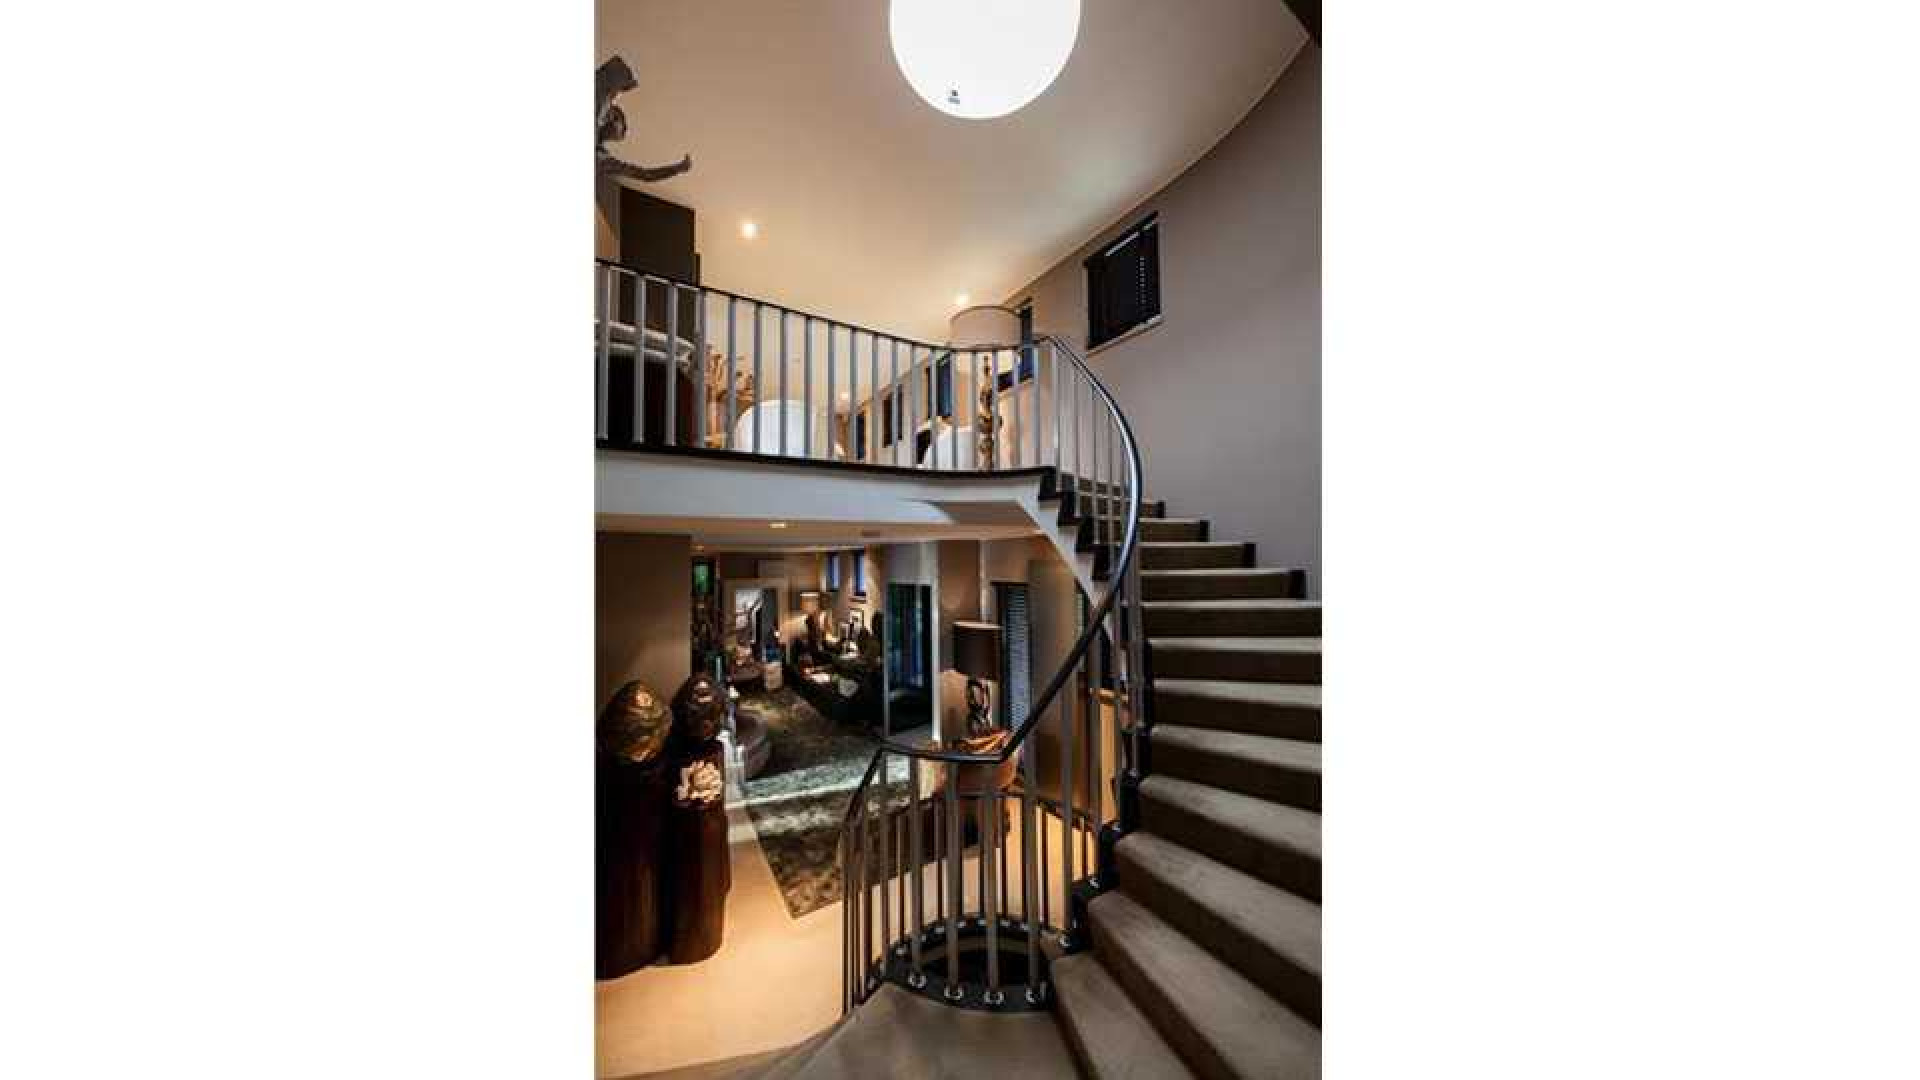 Top interieur stylist Eric Kuster zet zijn eigen droomvilla te koop. Zie foto's 20